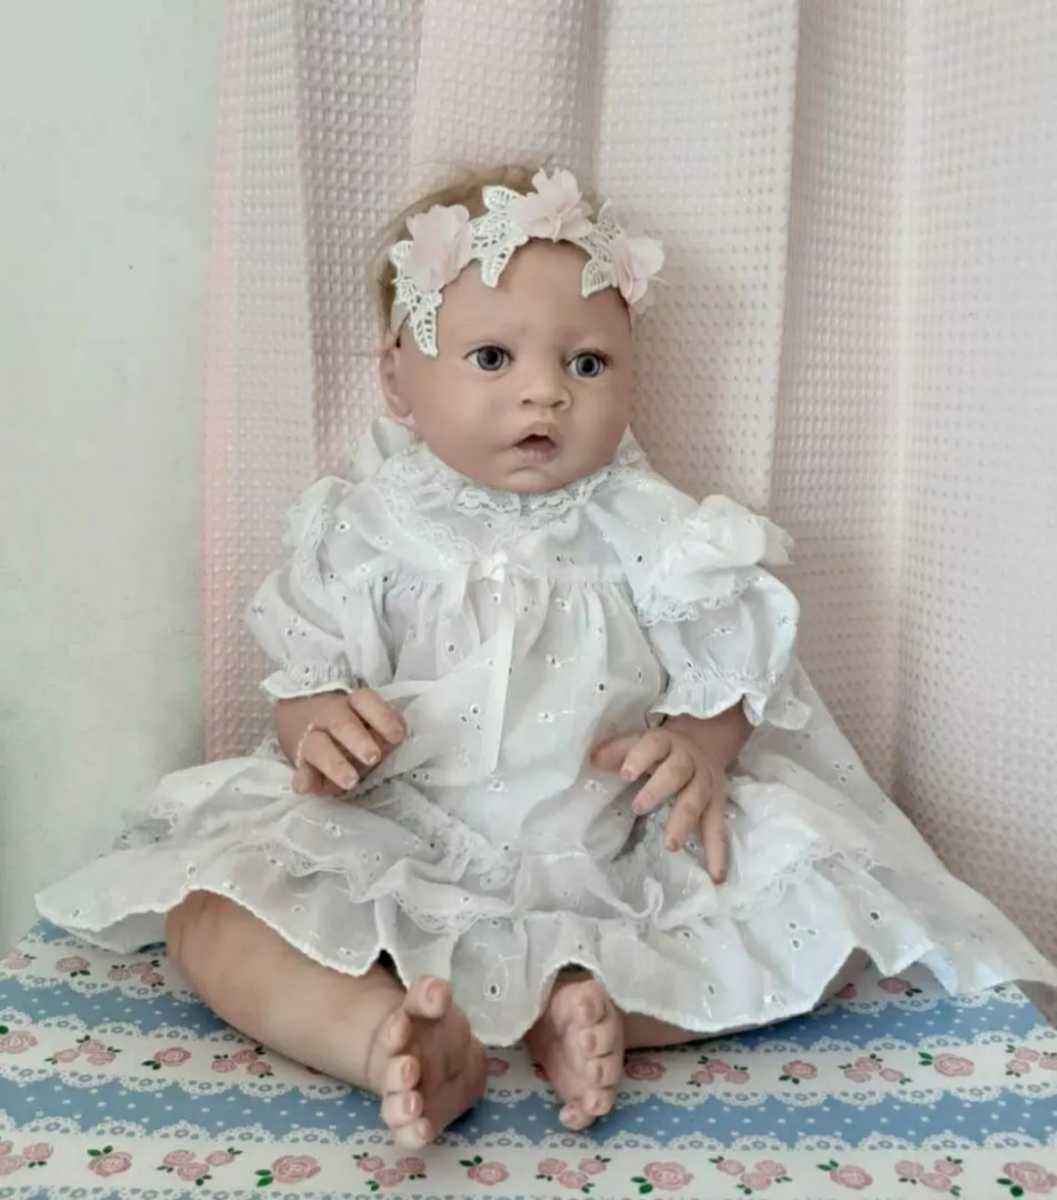 リボーンベビー リボーンドール 女の子 約54cm 約2.4kg 植毛 海外アーティスト ハイクオリティ リアル 赤ちゃん 人形